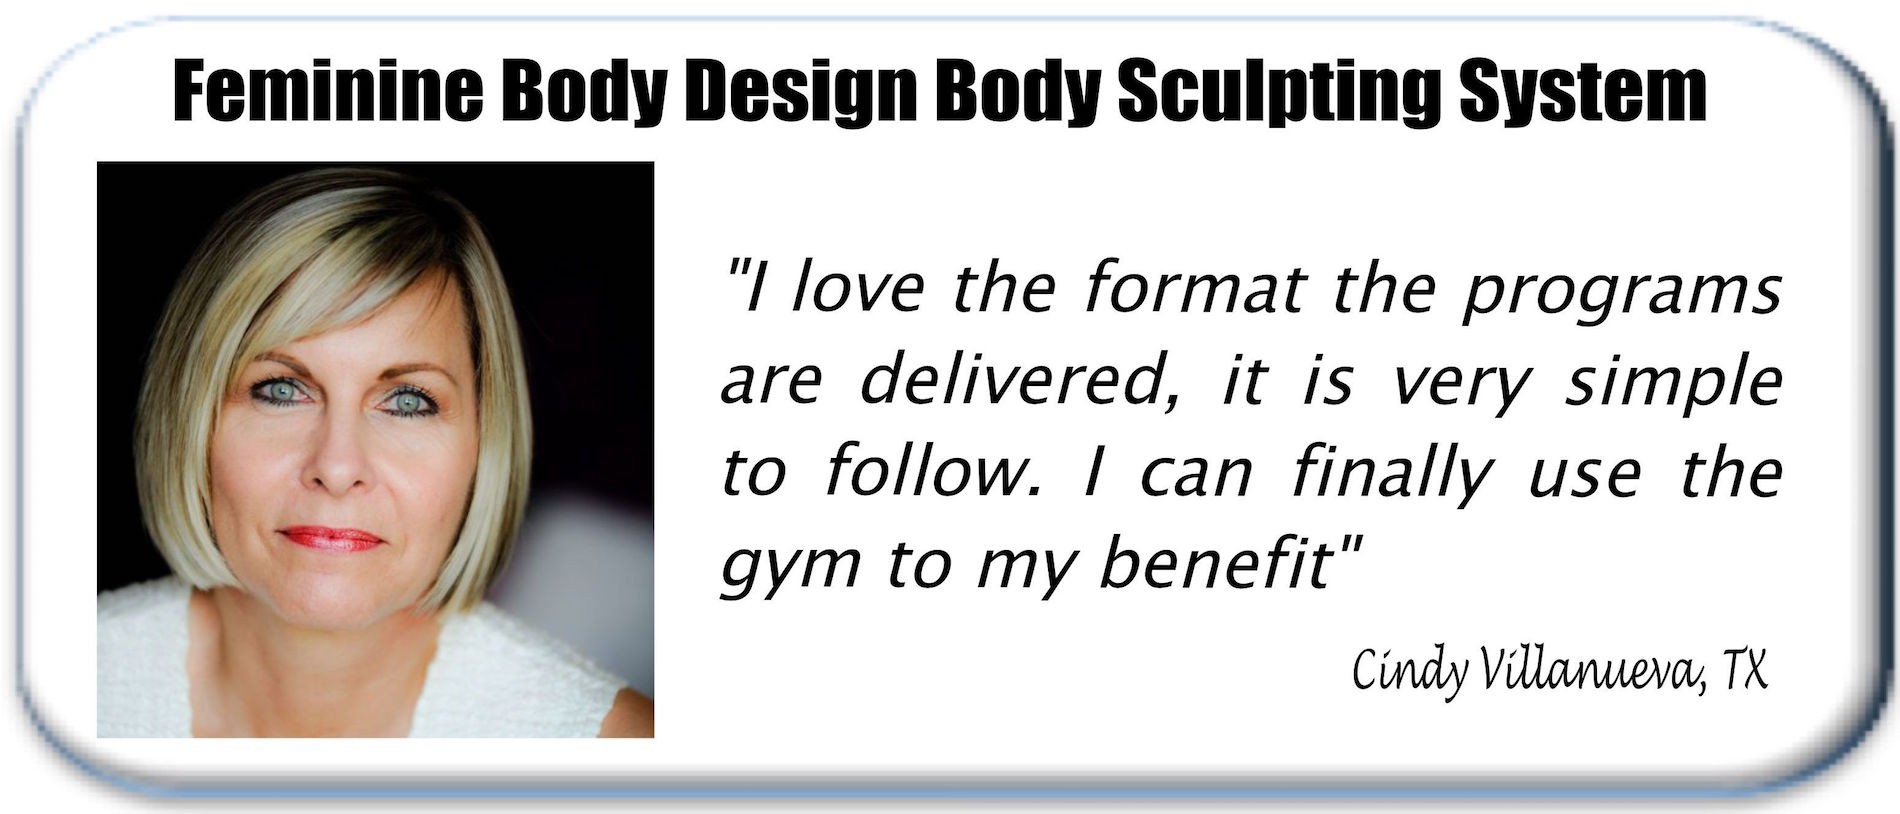 Feminine Body Design women's strength training testimonial